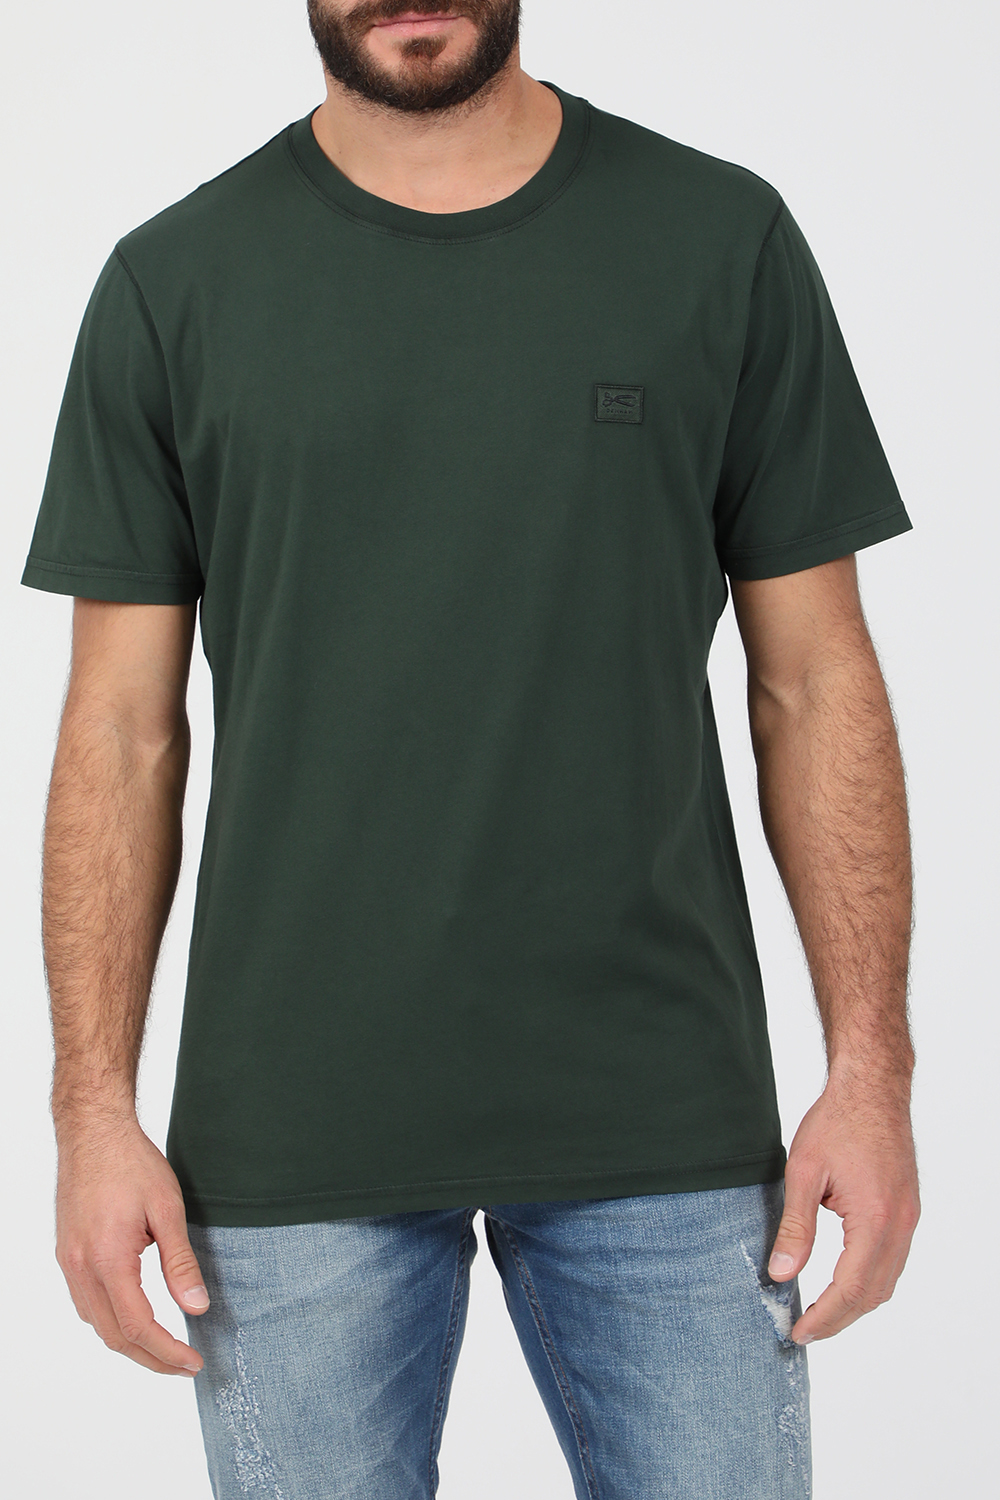 Ανδρικά/Ρούχα/Μπλούζες/Κοντομάνικες DENHAM - Ανδρικό t-shirt DENHAM APPLIQ πράσινο